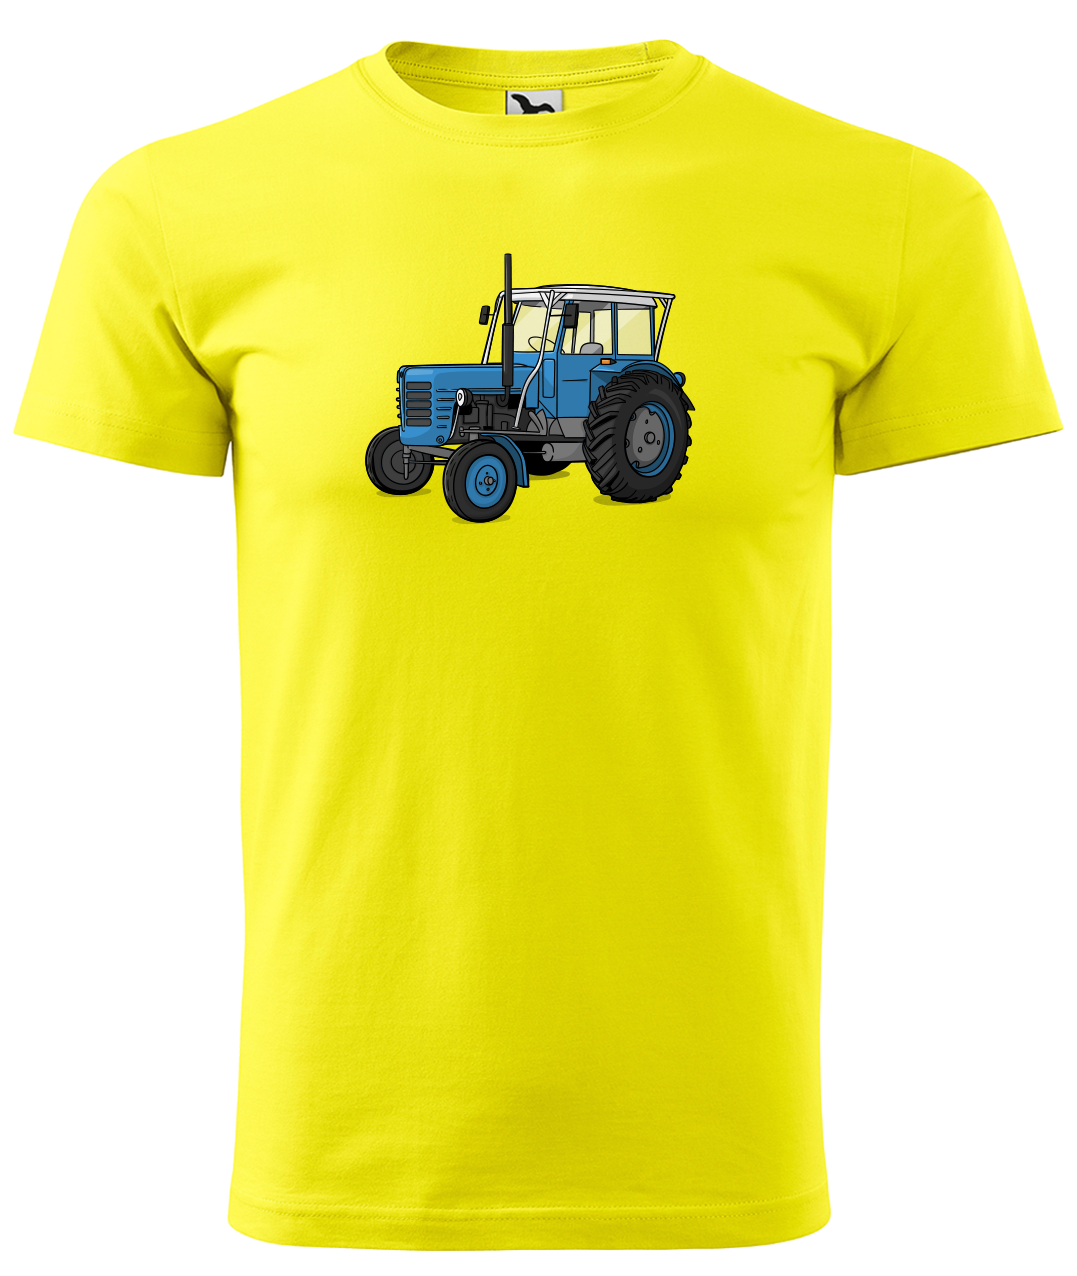 Dětské tričko s traktorem - Starý traktor Velikost: 6 let / 122 cm, Barva: Žlutá (04)